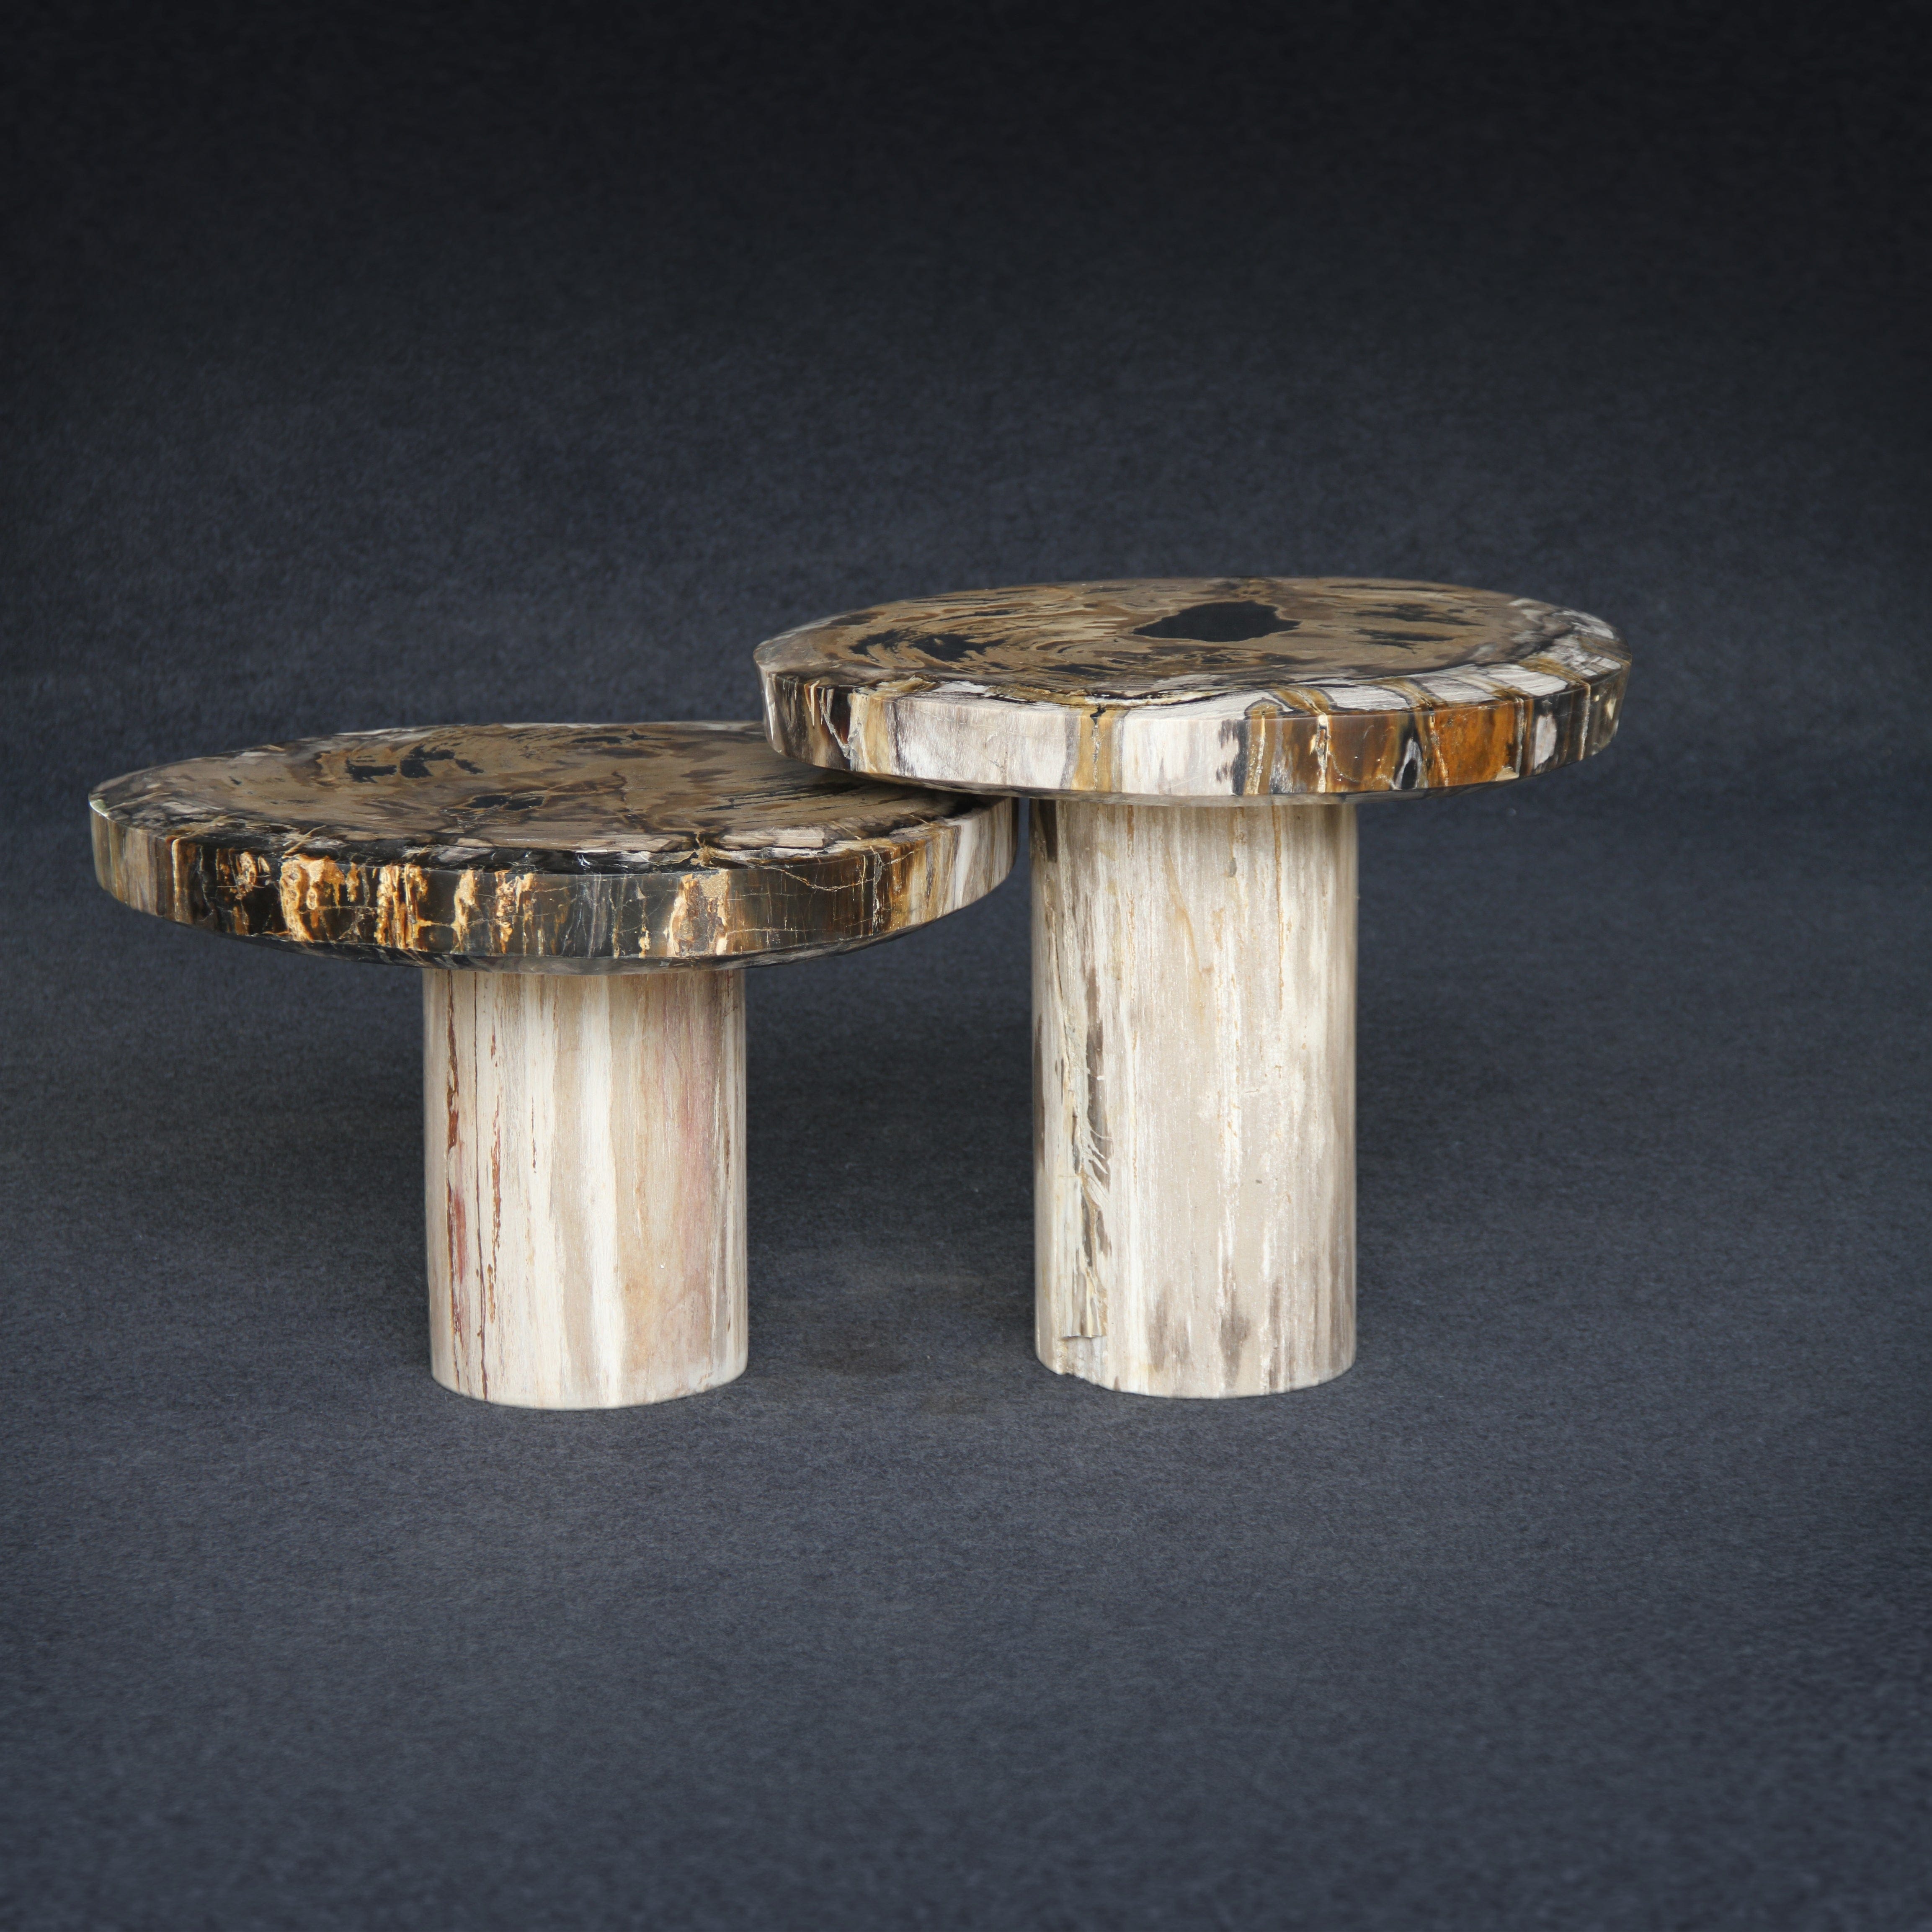 Kalifano Petrified Wood Petrified Wood Mushroom Side (Table A) 15" / 137 lbs PWMT8800.001